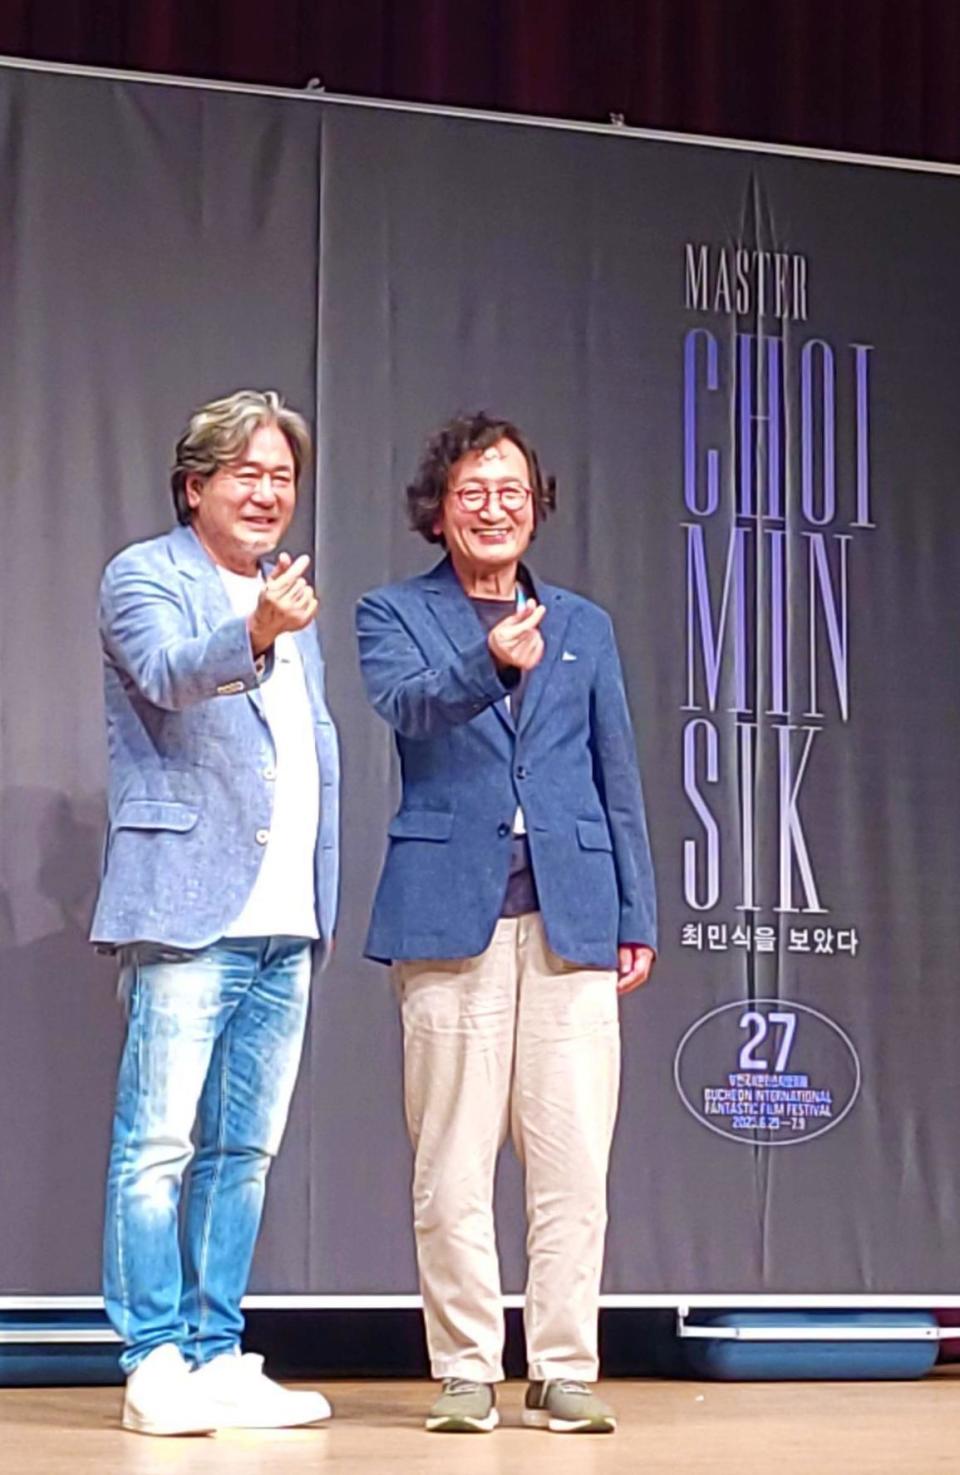 崔岷植與富川影展影展組織委員長鄭智泳導演一同出席記者會。